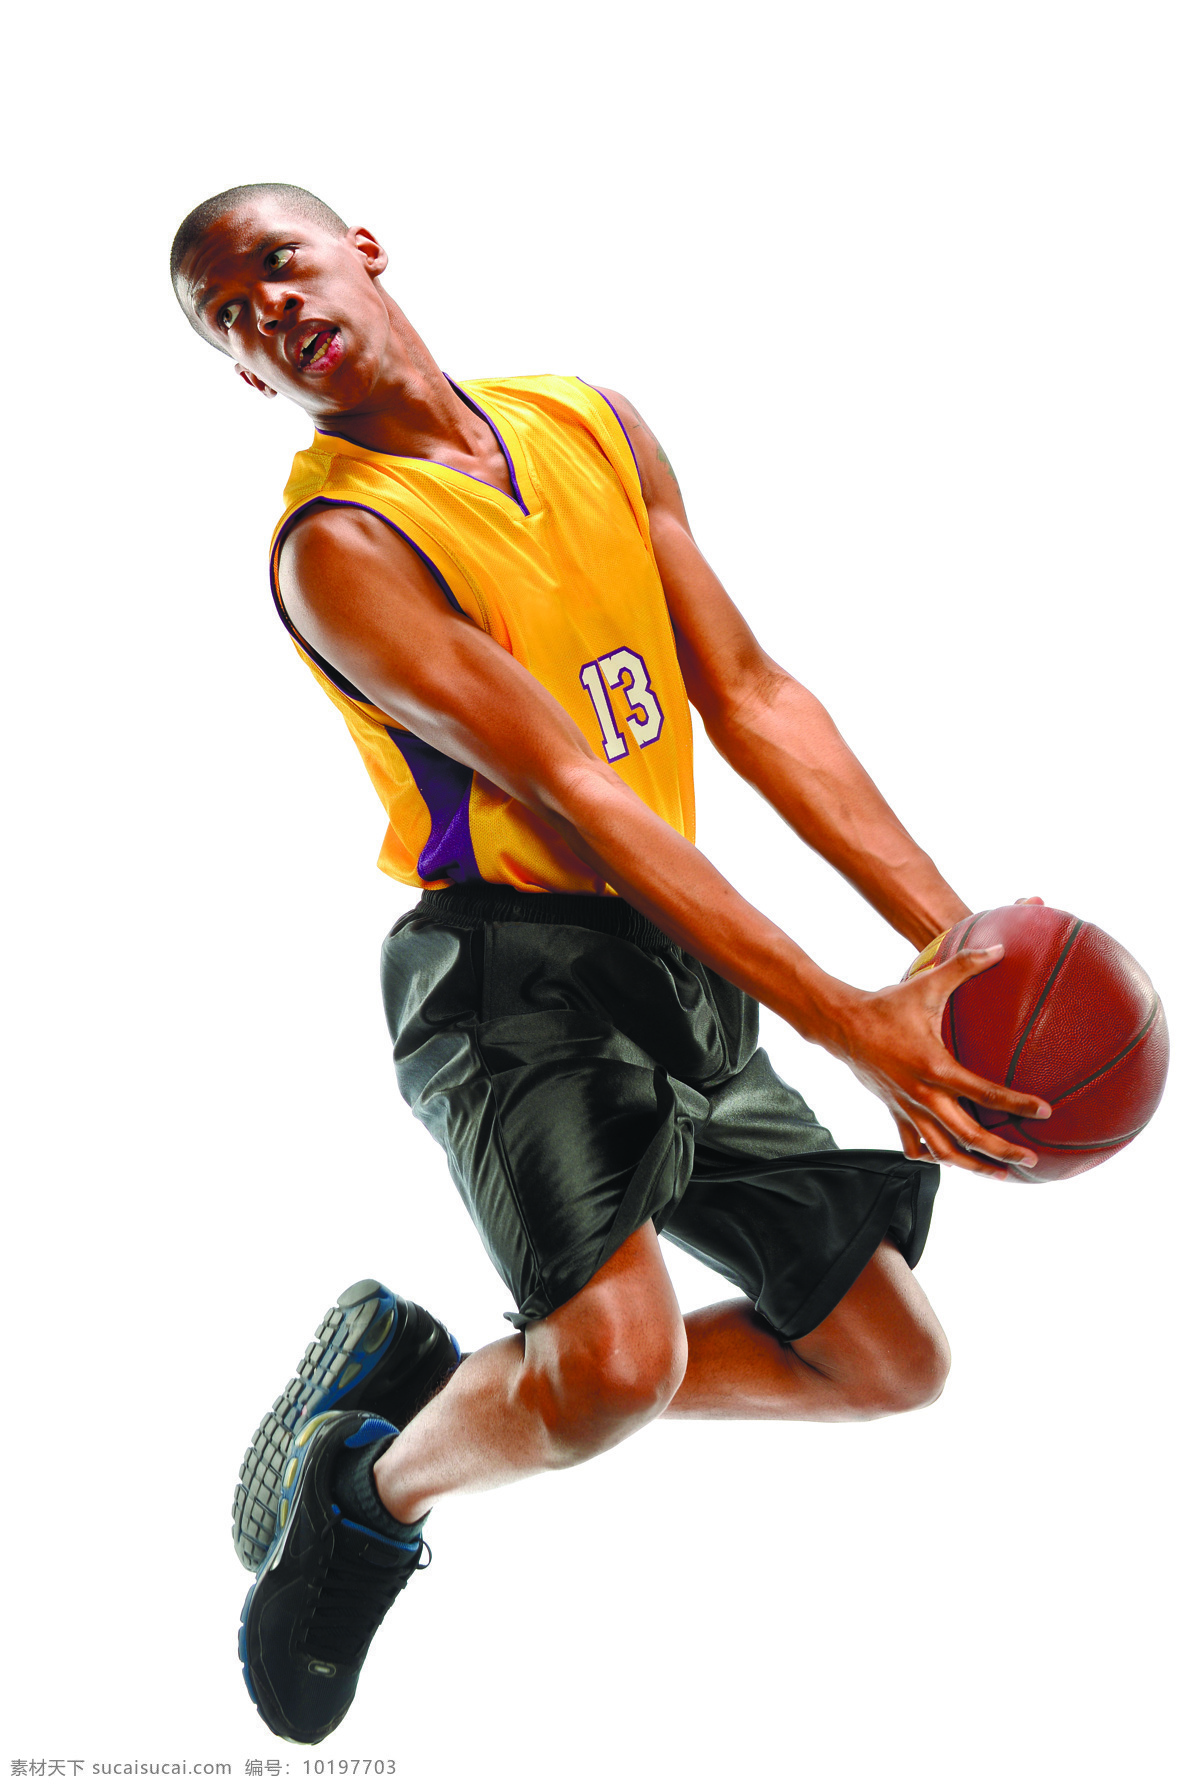 篮球 跳跃 黑人 运动员 体育 运动 比赛 篮球主题 体育运动 生活百科